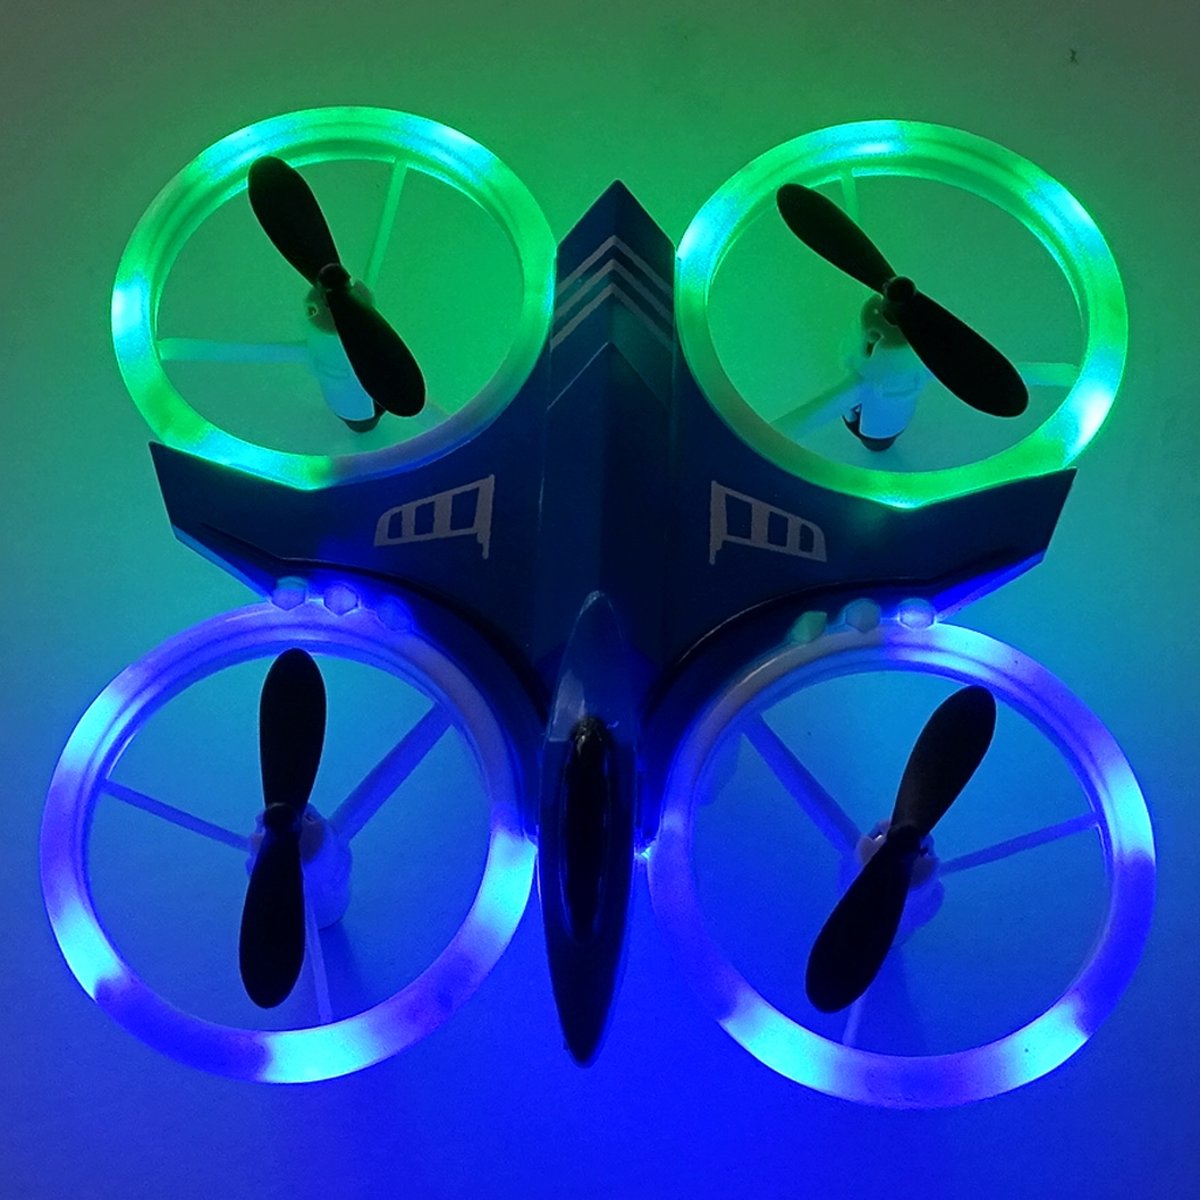 Mini drone voor kinderen - sprankelende Ledverlichting- met controller- Blauwe Romp - met extra accu- leuke gadget